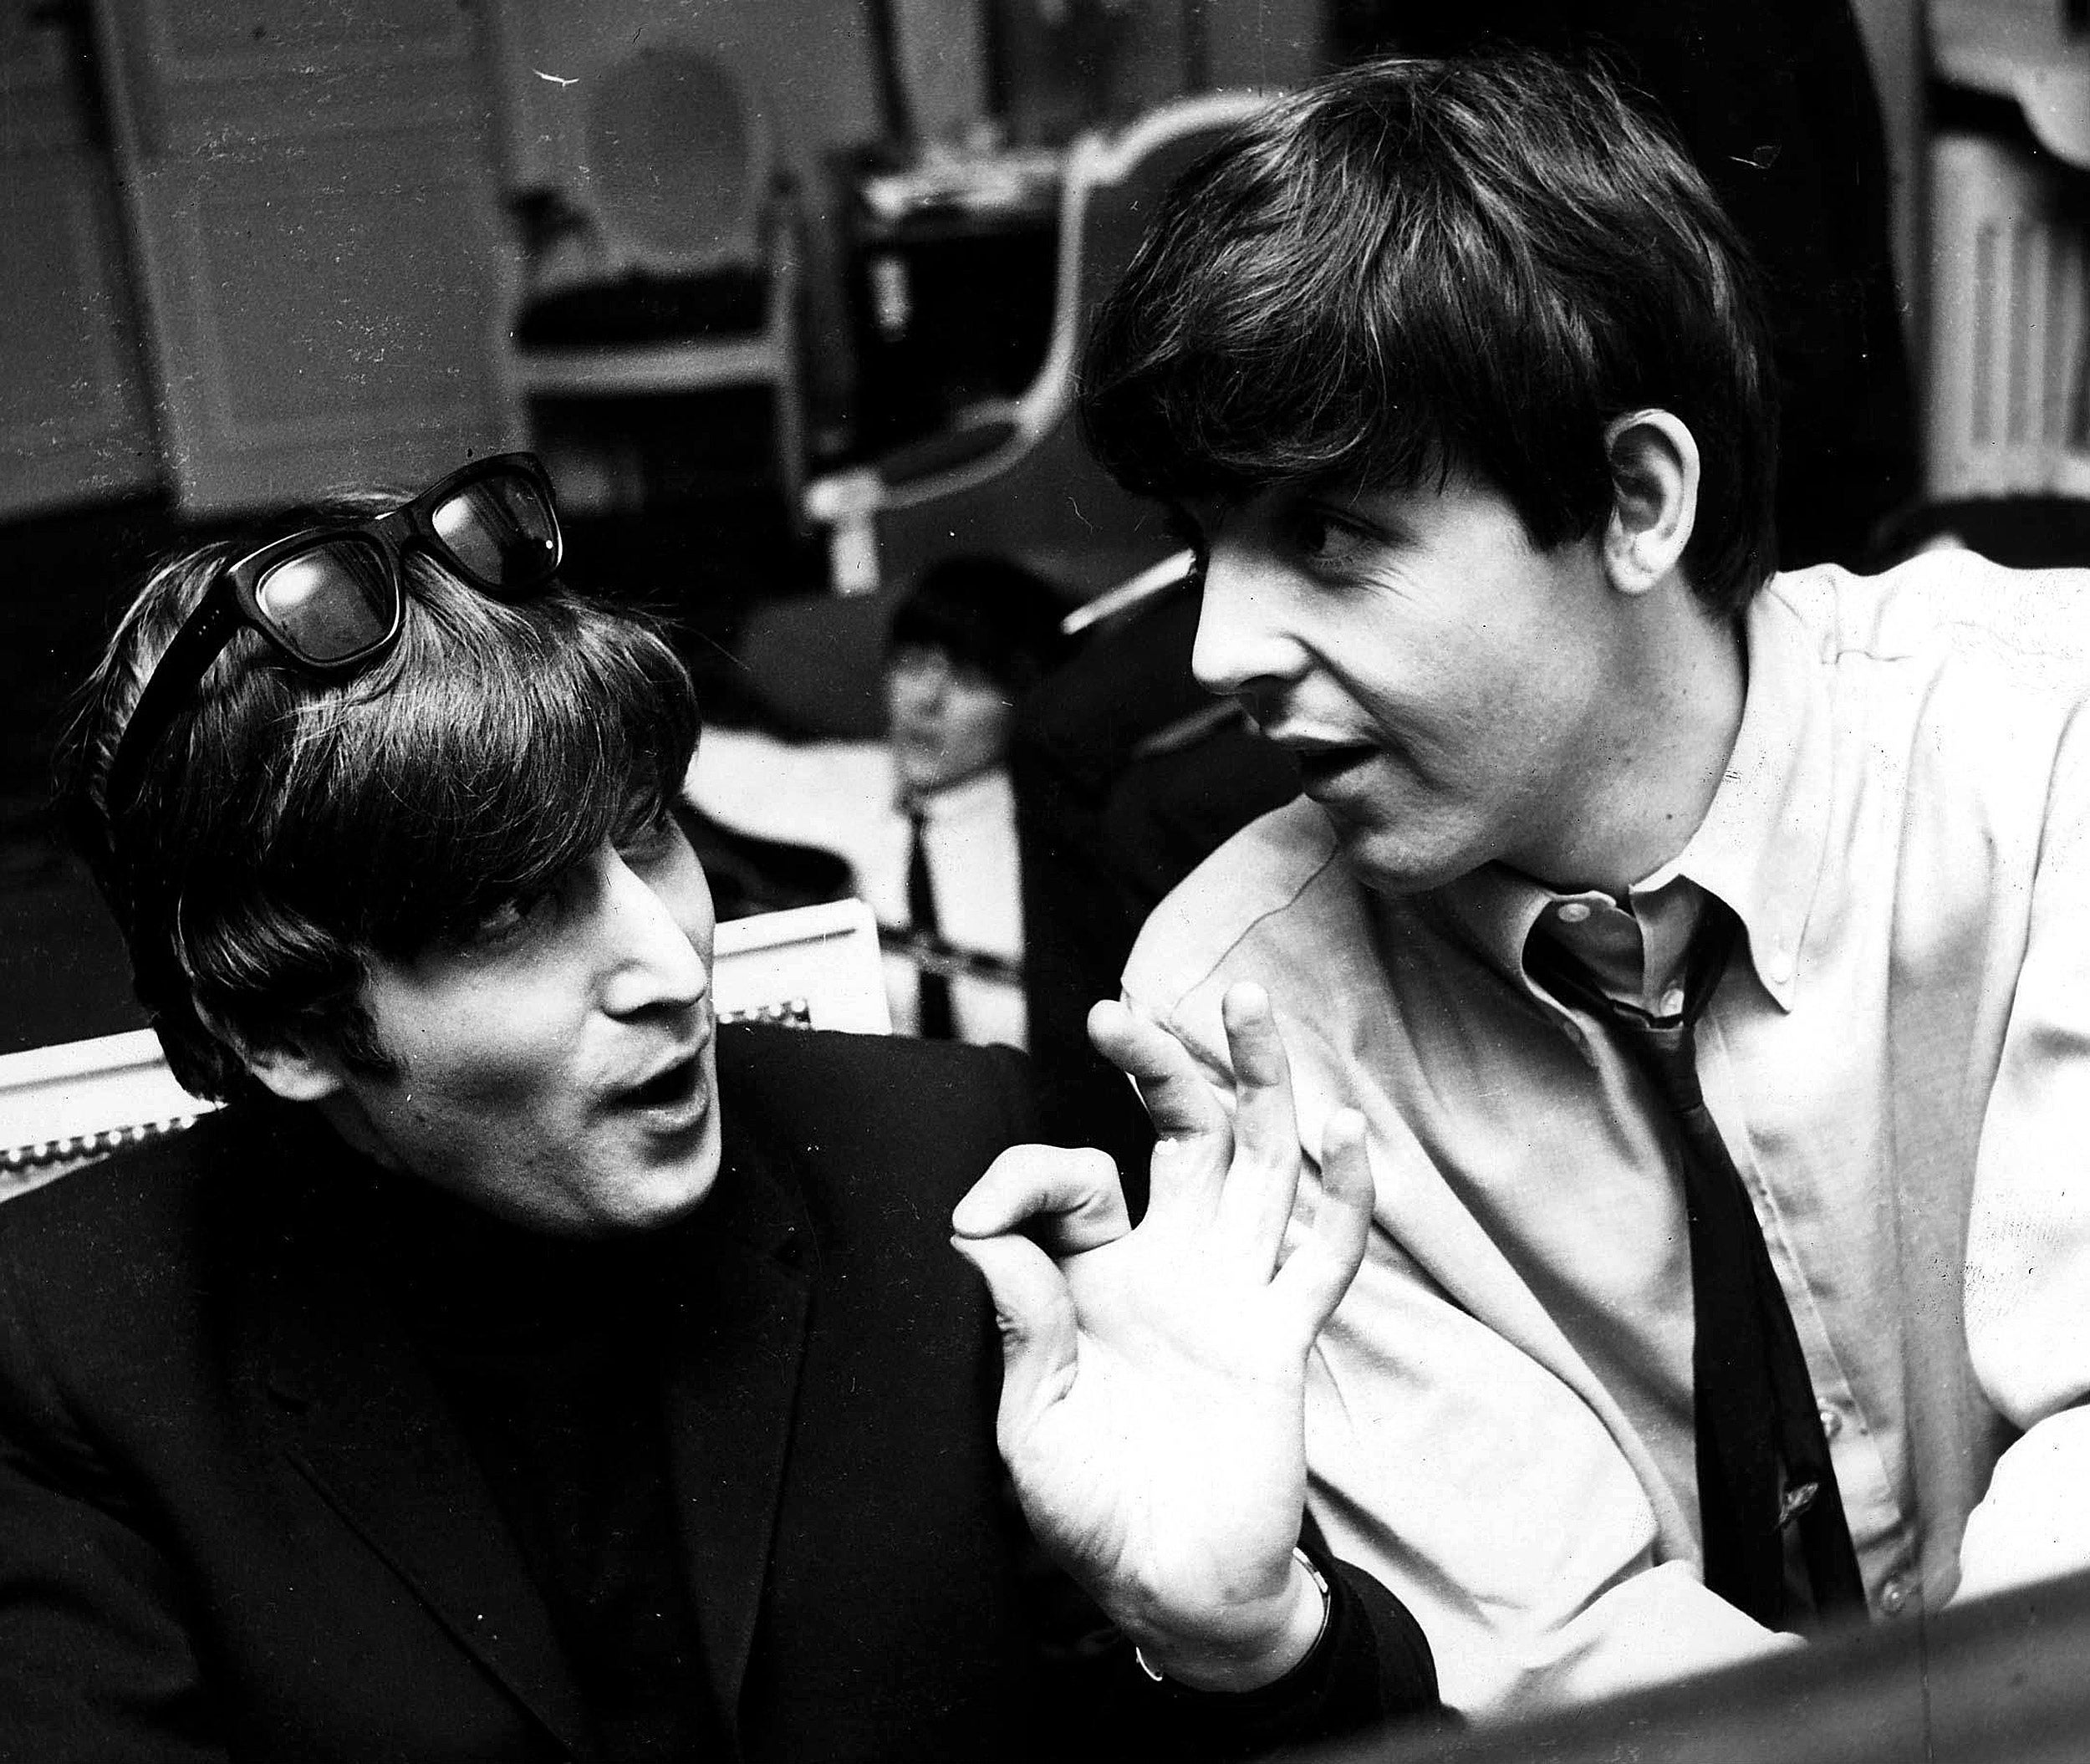 John Lennon and Paul McCartney.